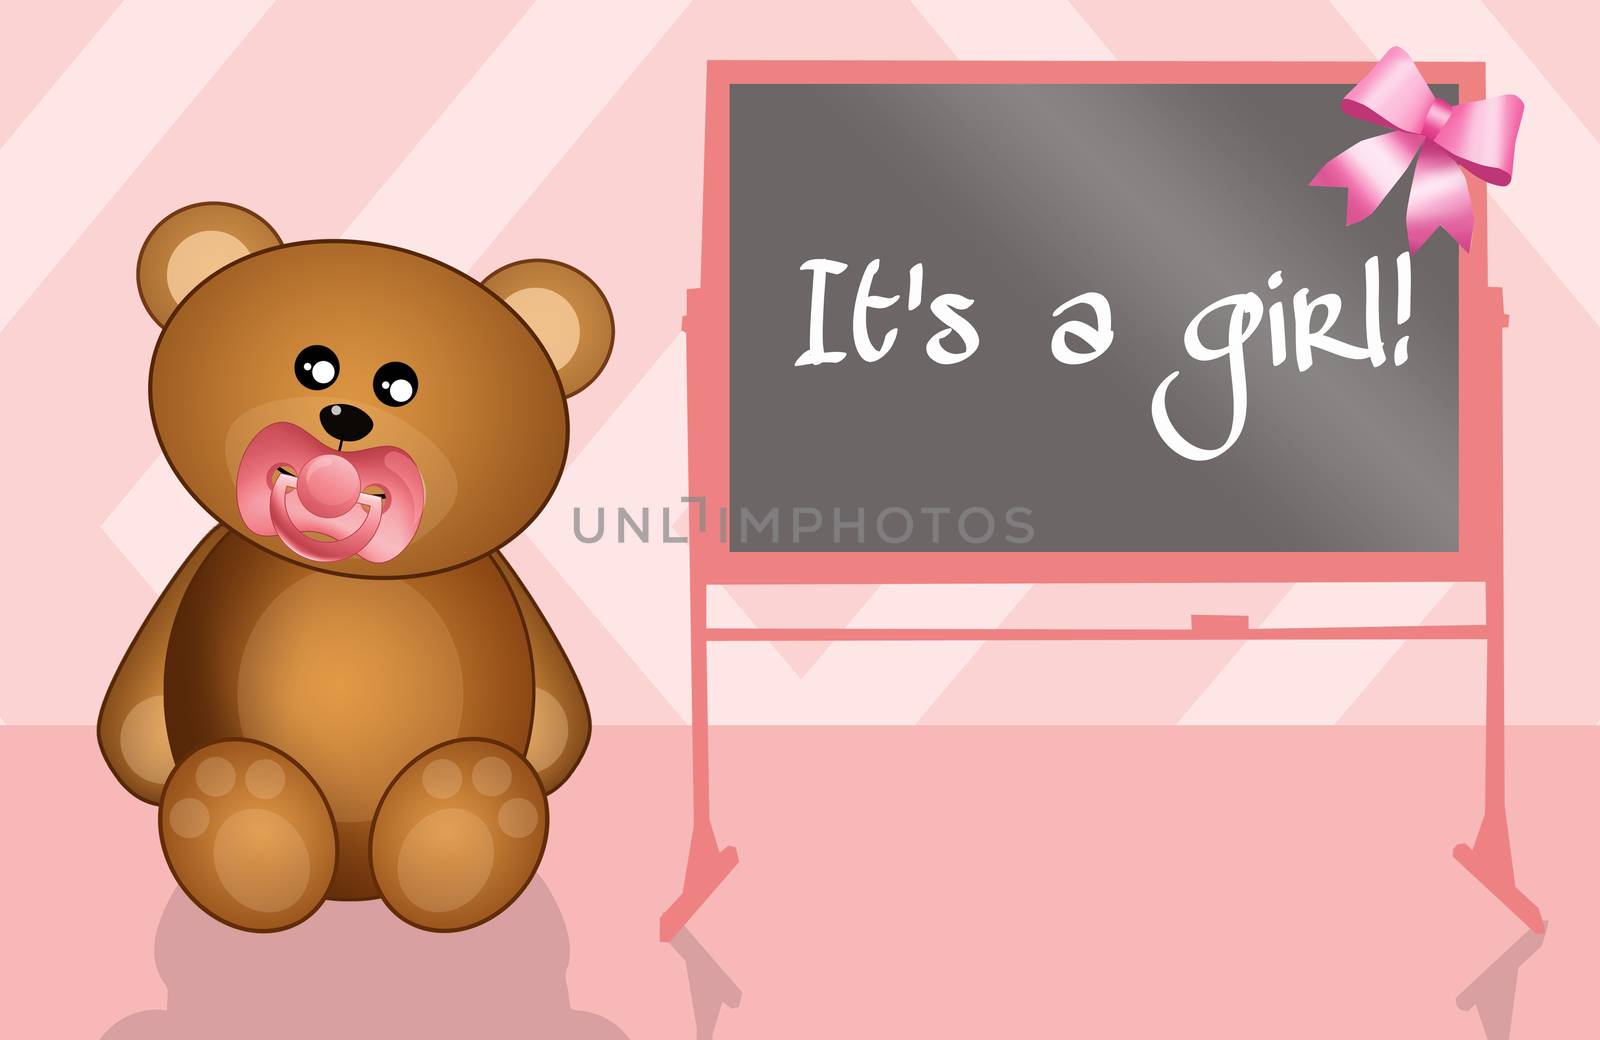 teddy bear for girl